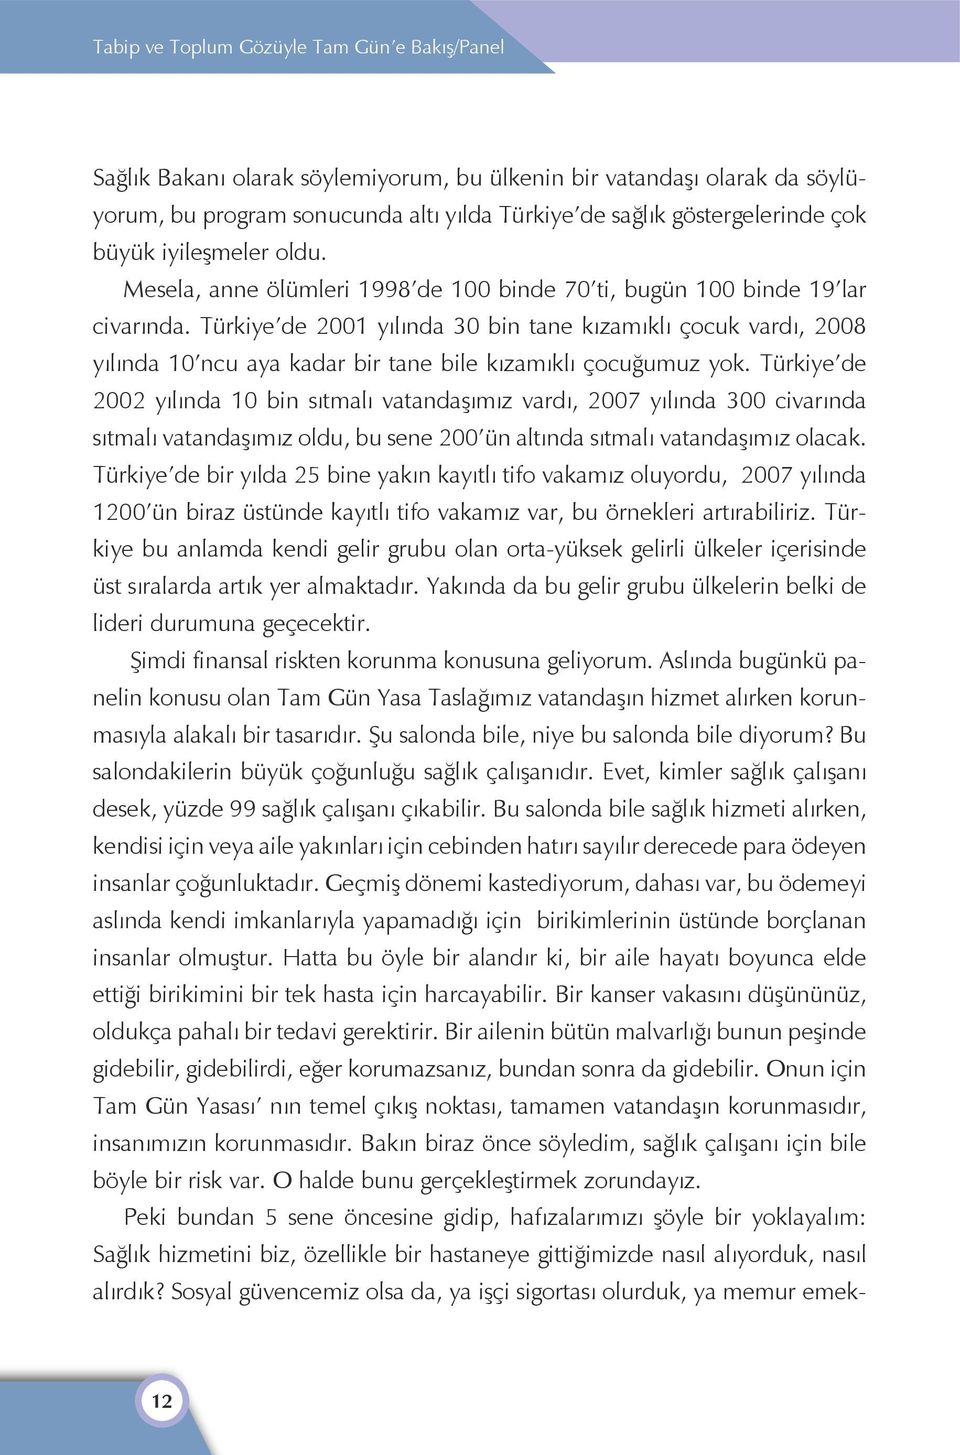 Türkiye de 2001 yılında 30 bin tane kızamıklı çocuk vardı, 2008 yılında 10 ncu aya kadar bir tane bile kızamıklı çocuğumuz yok.